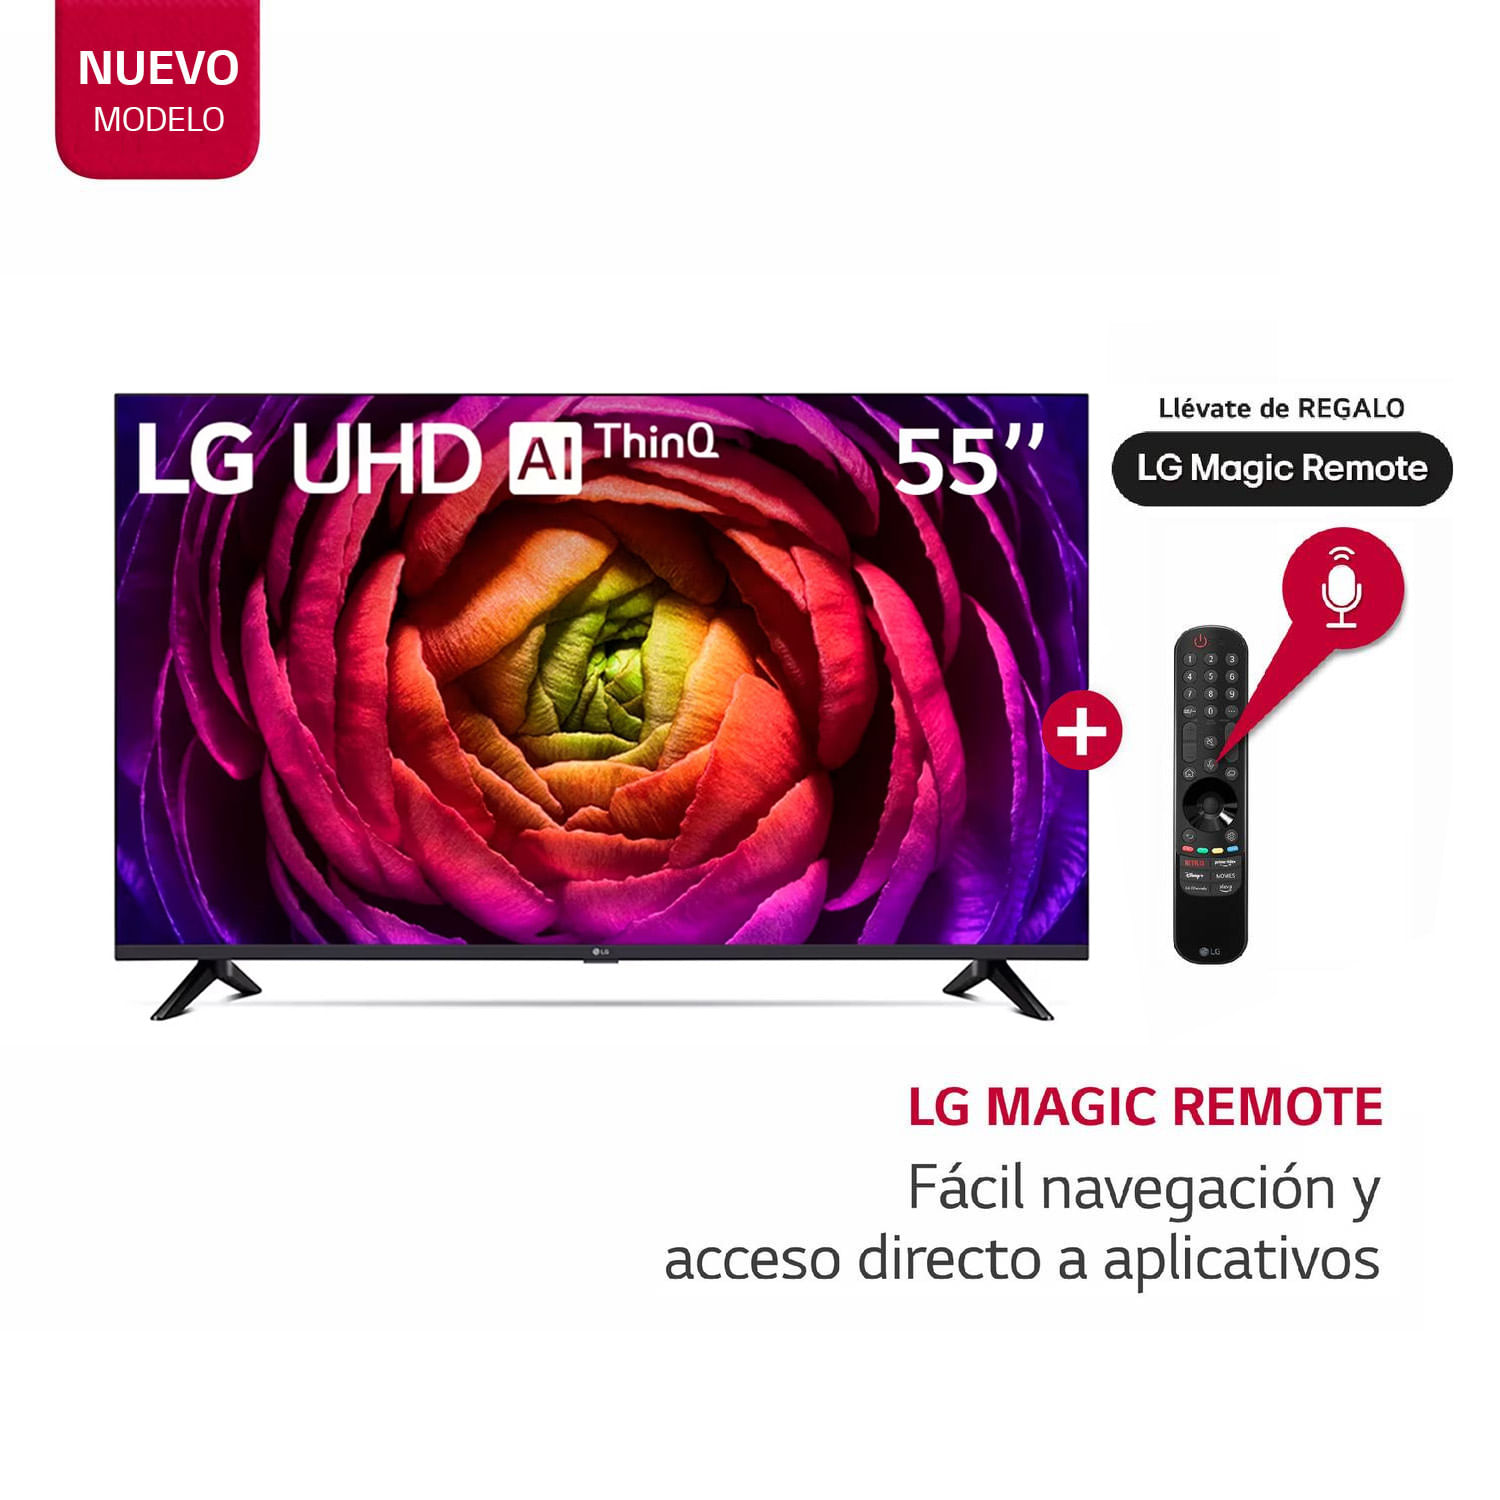 Televisor LG 55" LED Smart TV UHD 4K con ThinQ AI 55UR7300PSA + Magic Remote